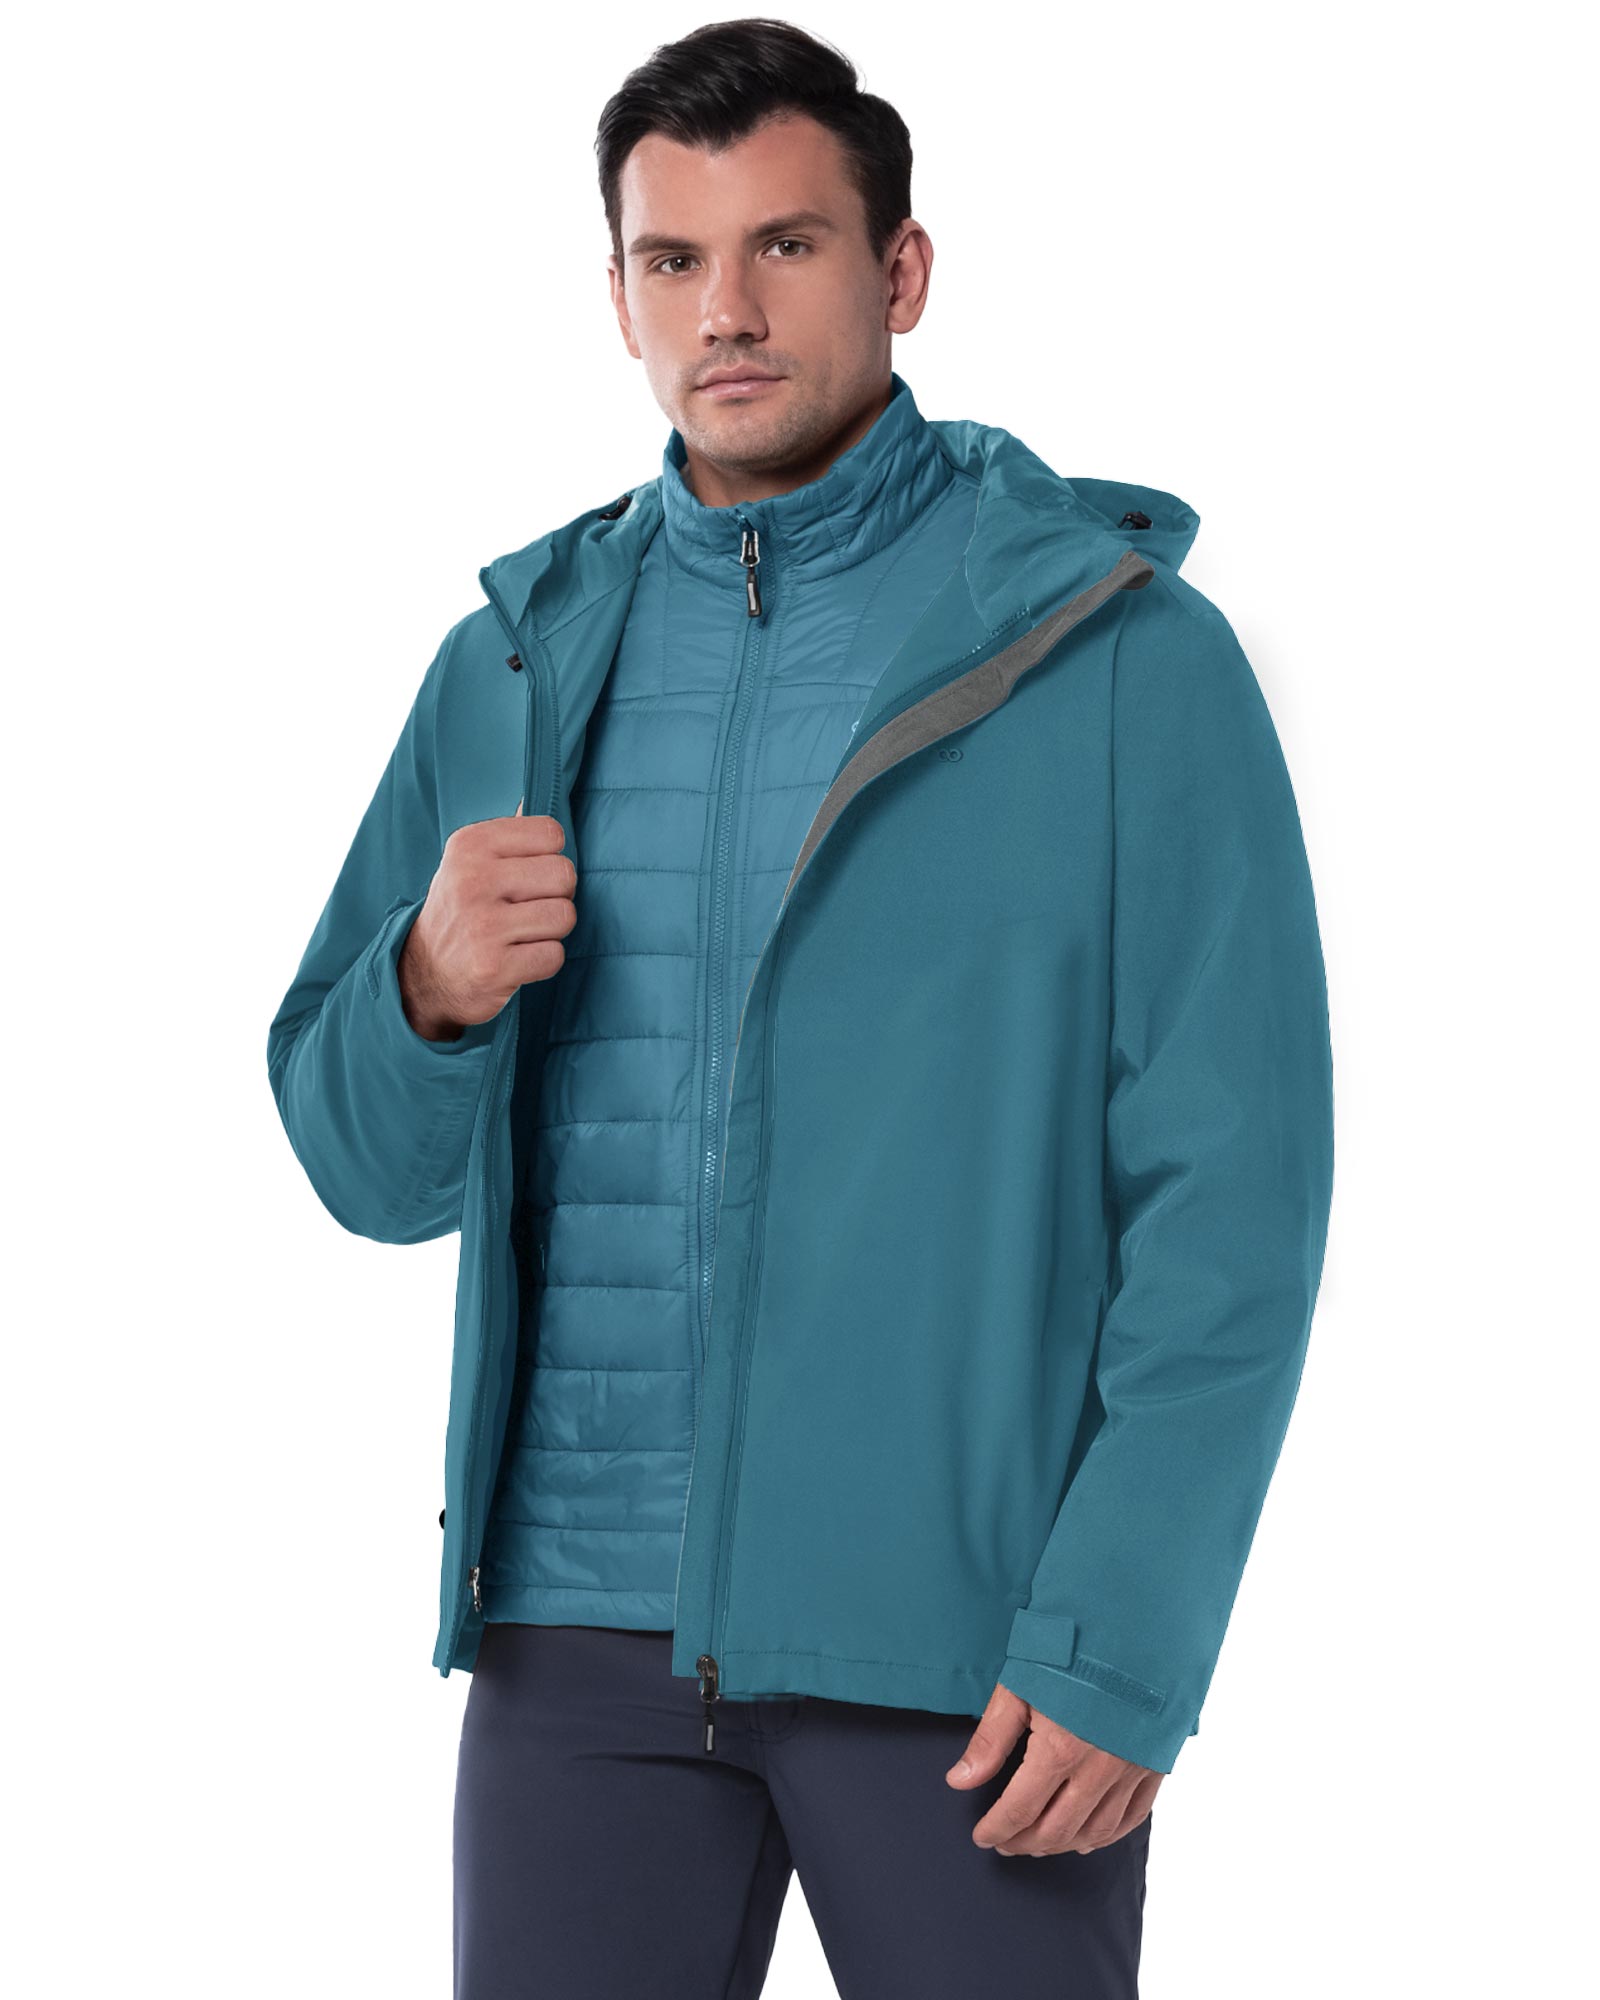 Compre UNIQLO JAPAN Fleece Full Zip Jacket (Long Sleeve)